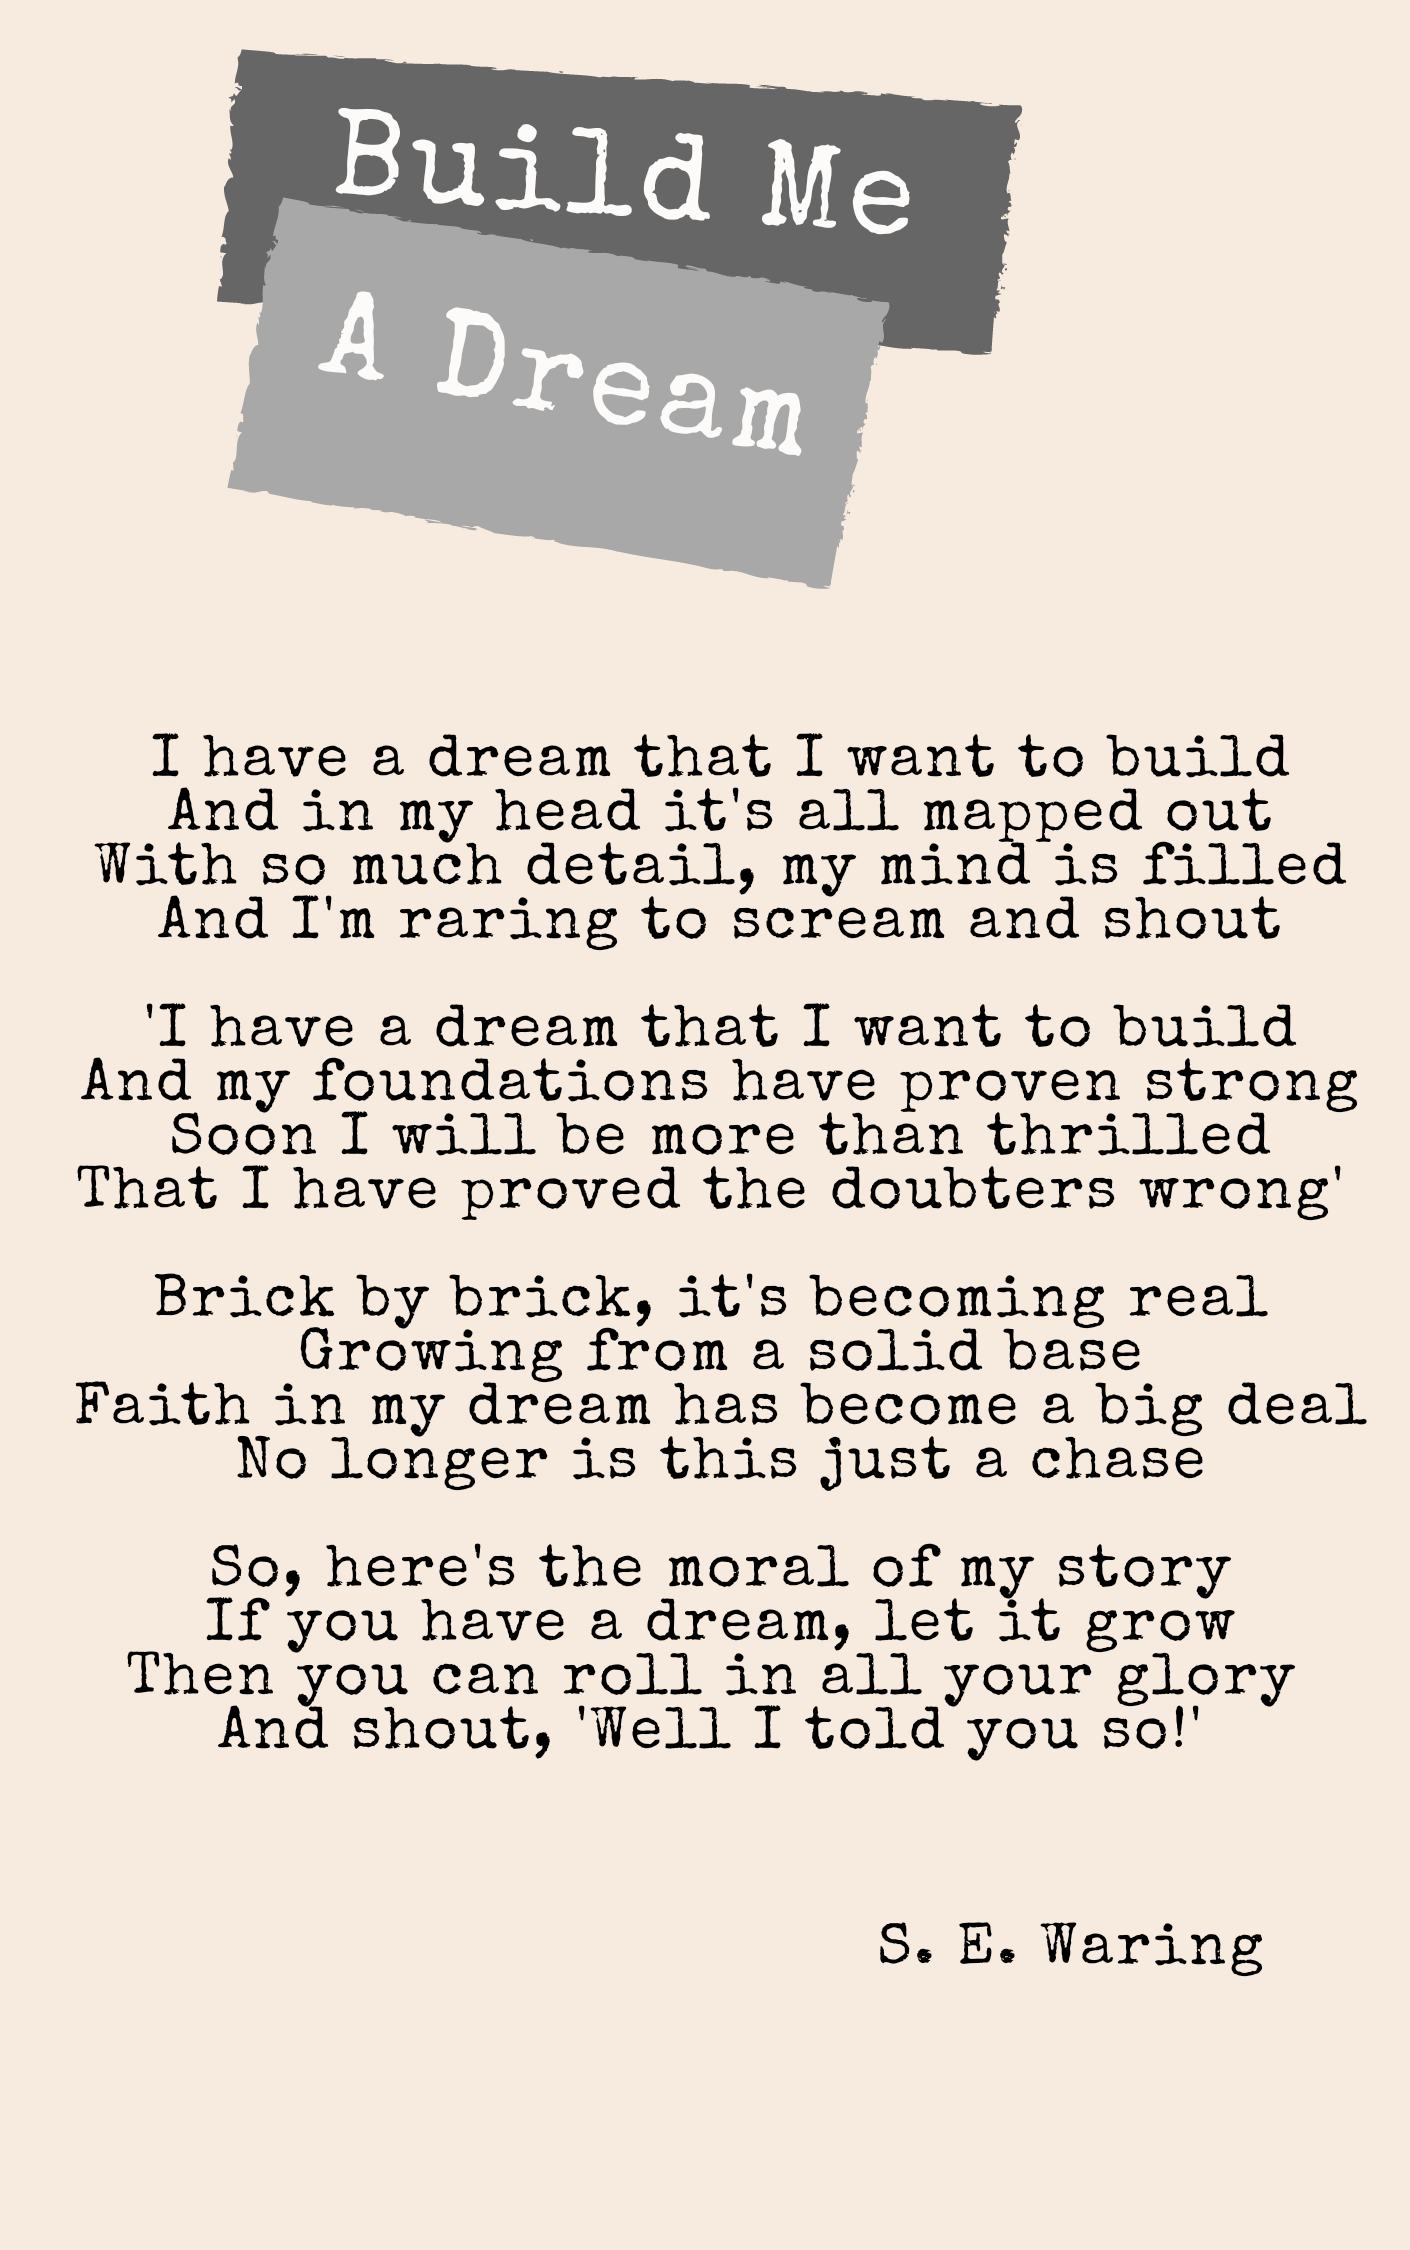 Build Me a Dream